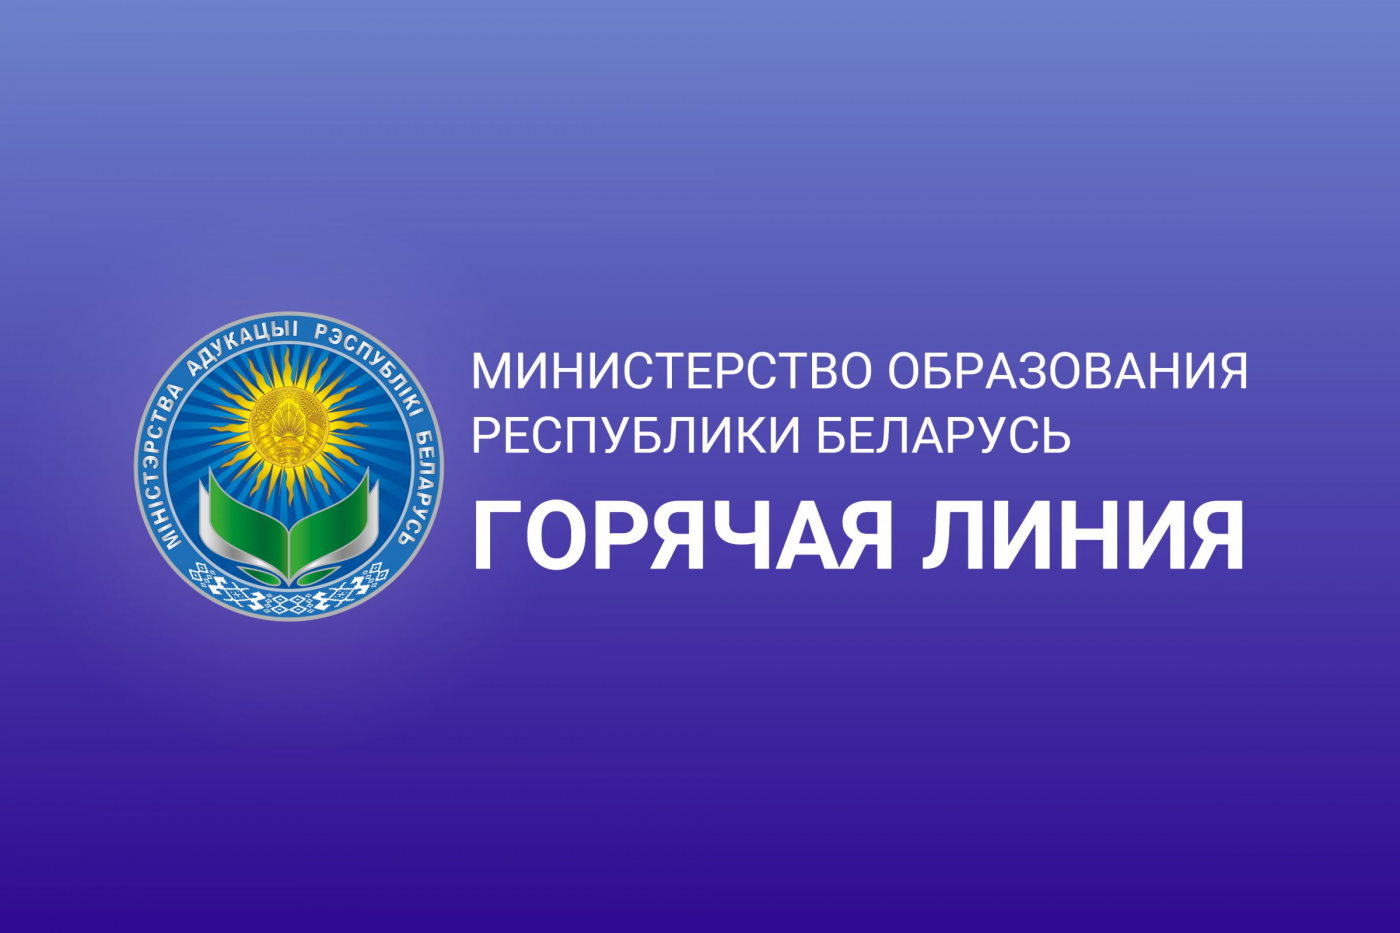 Министерством образования Республики Беларусь организована работа горячей линии